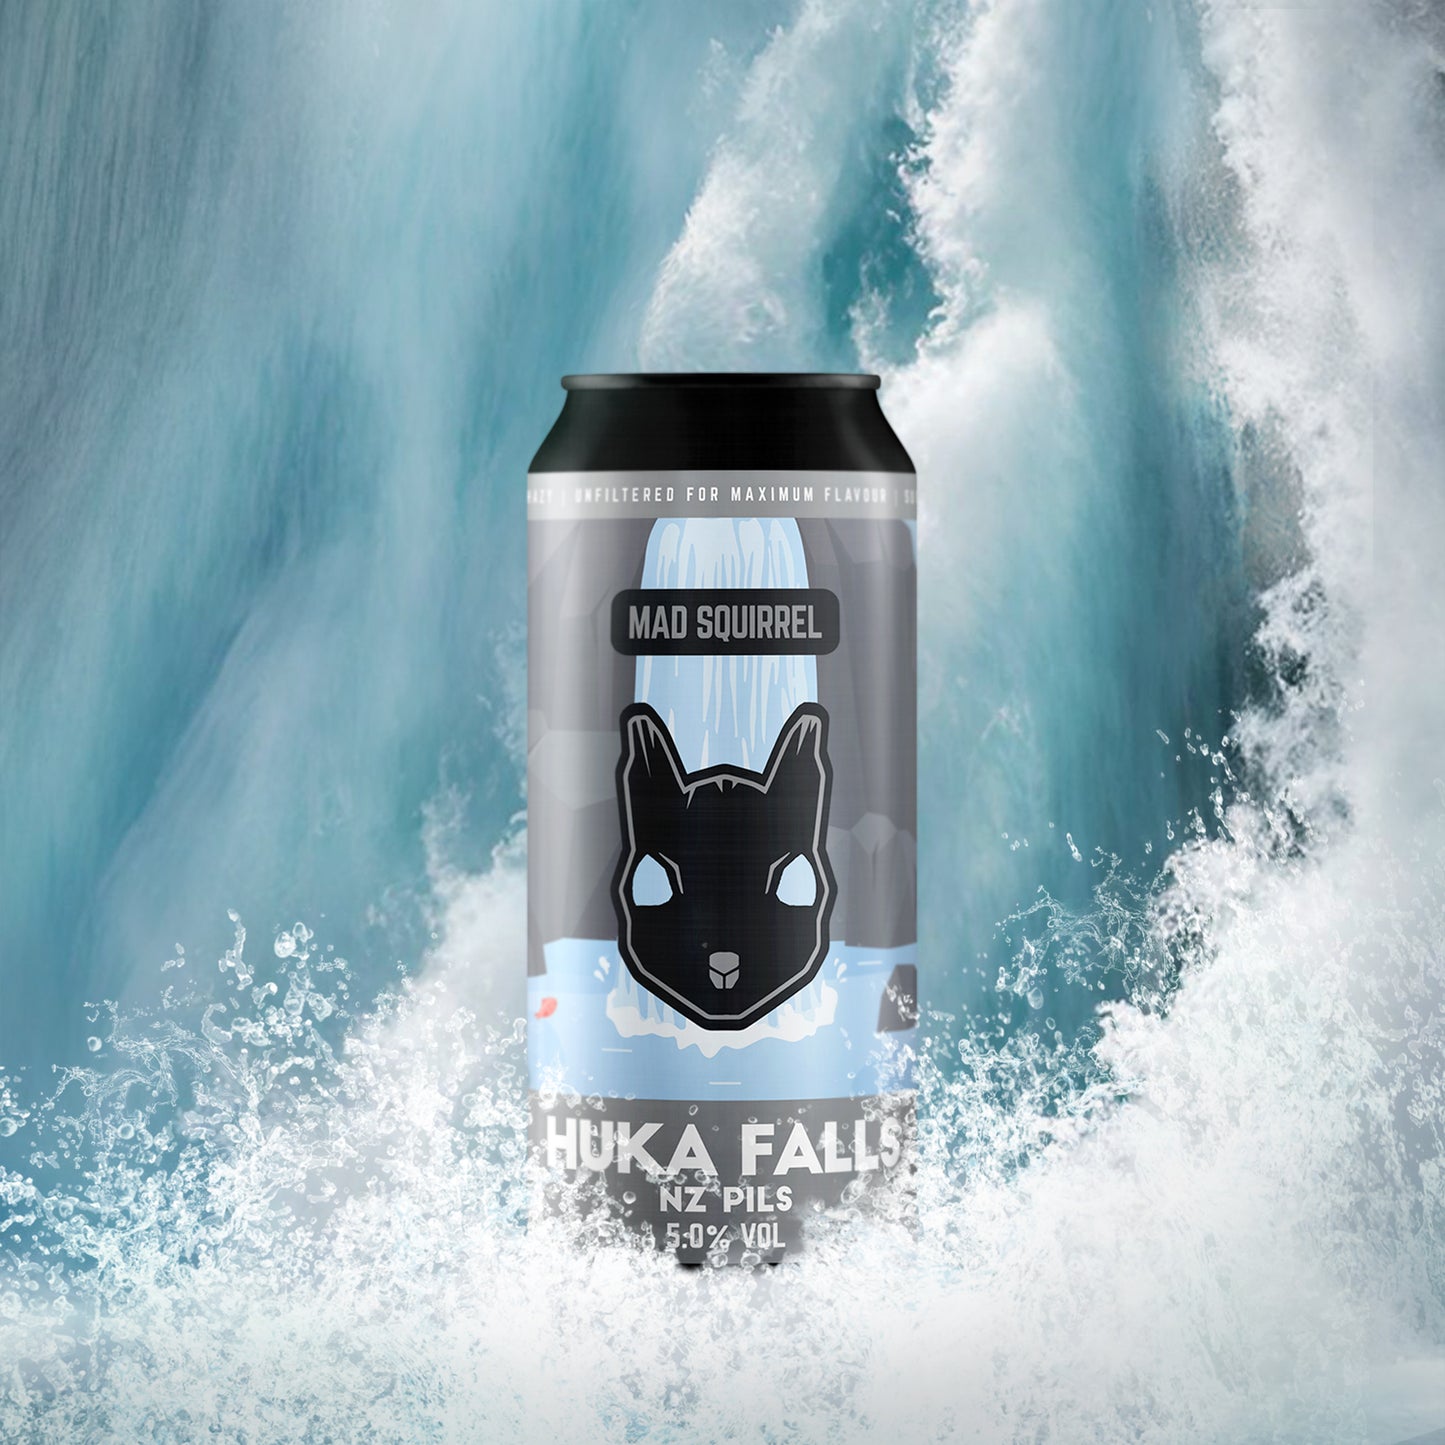 Huka Falls - NZ Pils